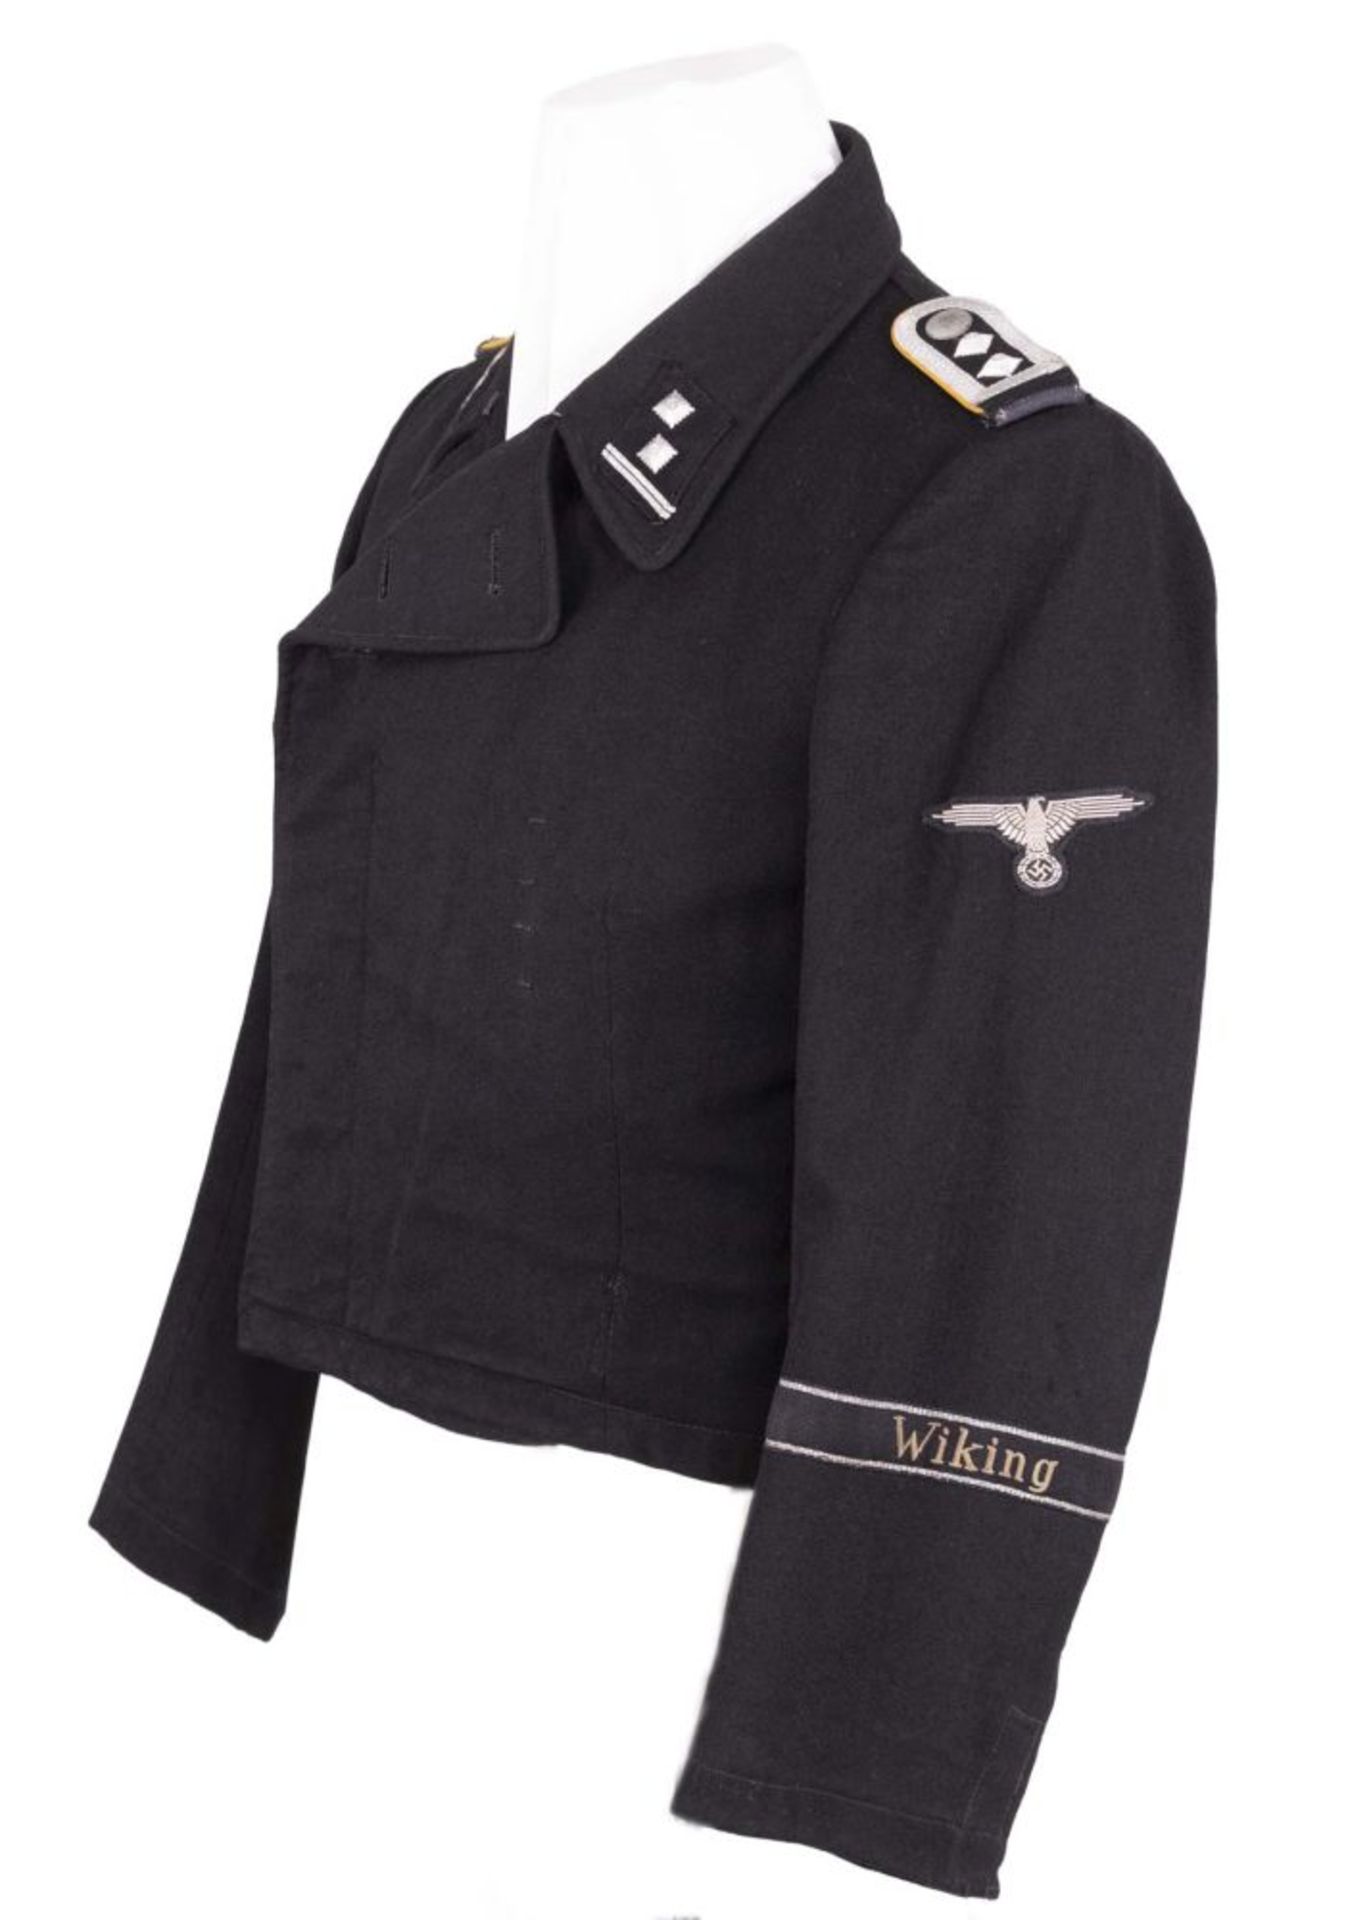 Waffen-SS, Feldbluse/Panzerjacke der schwarzen Sonderbekleidung für einen Hauptscharführer der